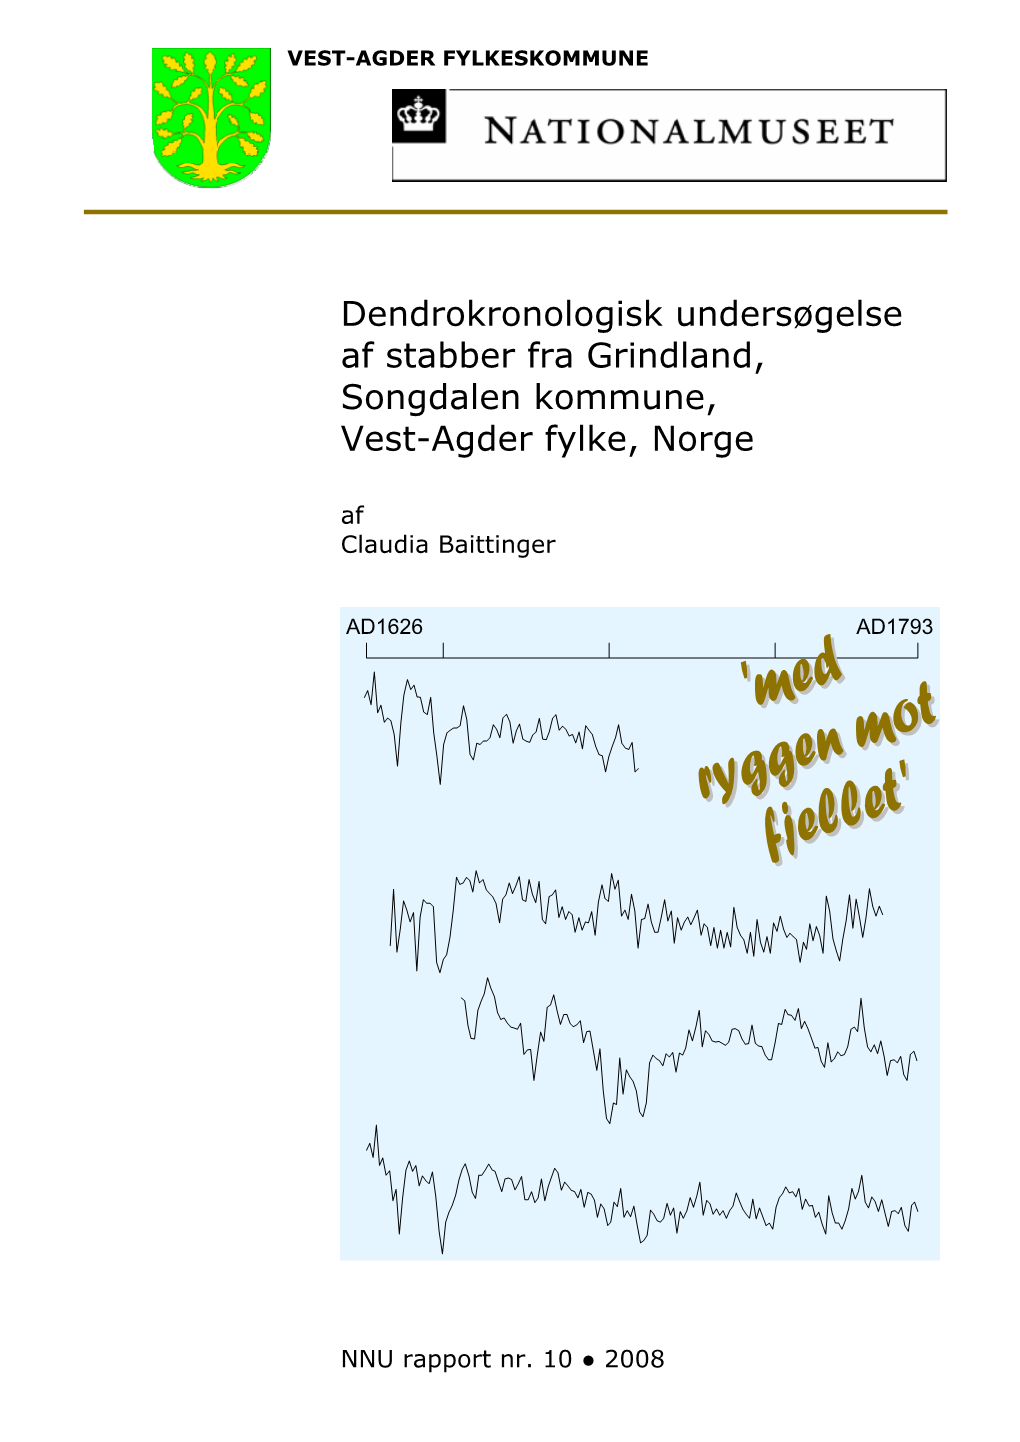 Dendrokronologisk Undersøgelse Af Stabber Fra Grindland, Songdalen Kommune, Vest-Agder Fylke, Norge